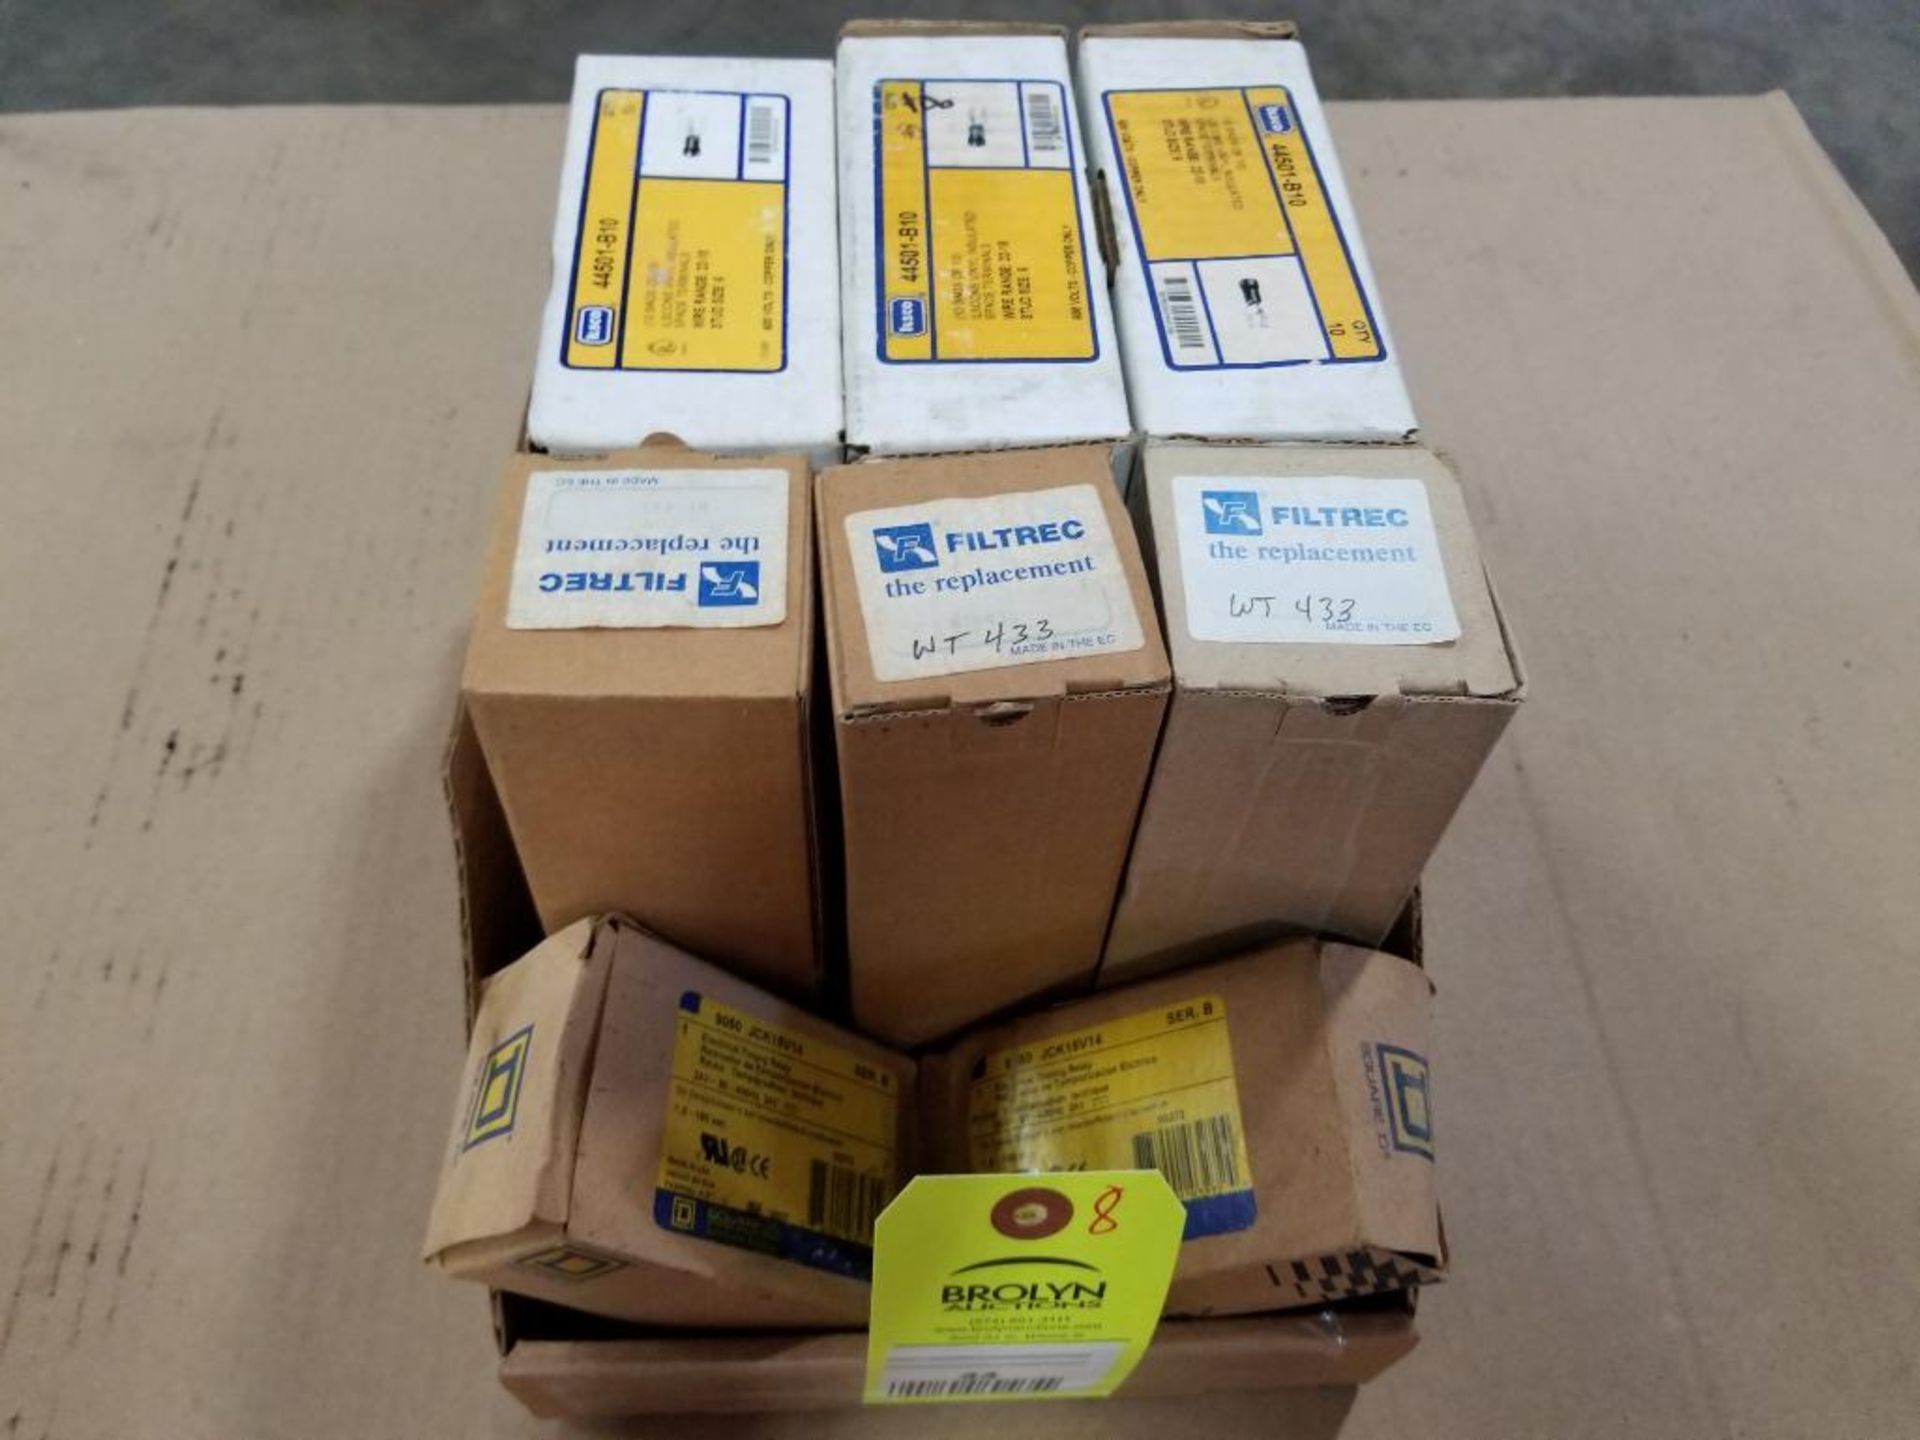 Assorted parts. Ilsco 44501-B10, Filtrec WT433, Square-D JCK15V14 relay. New in box.